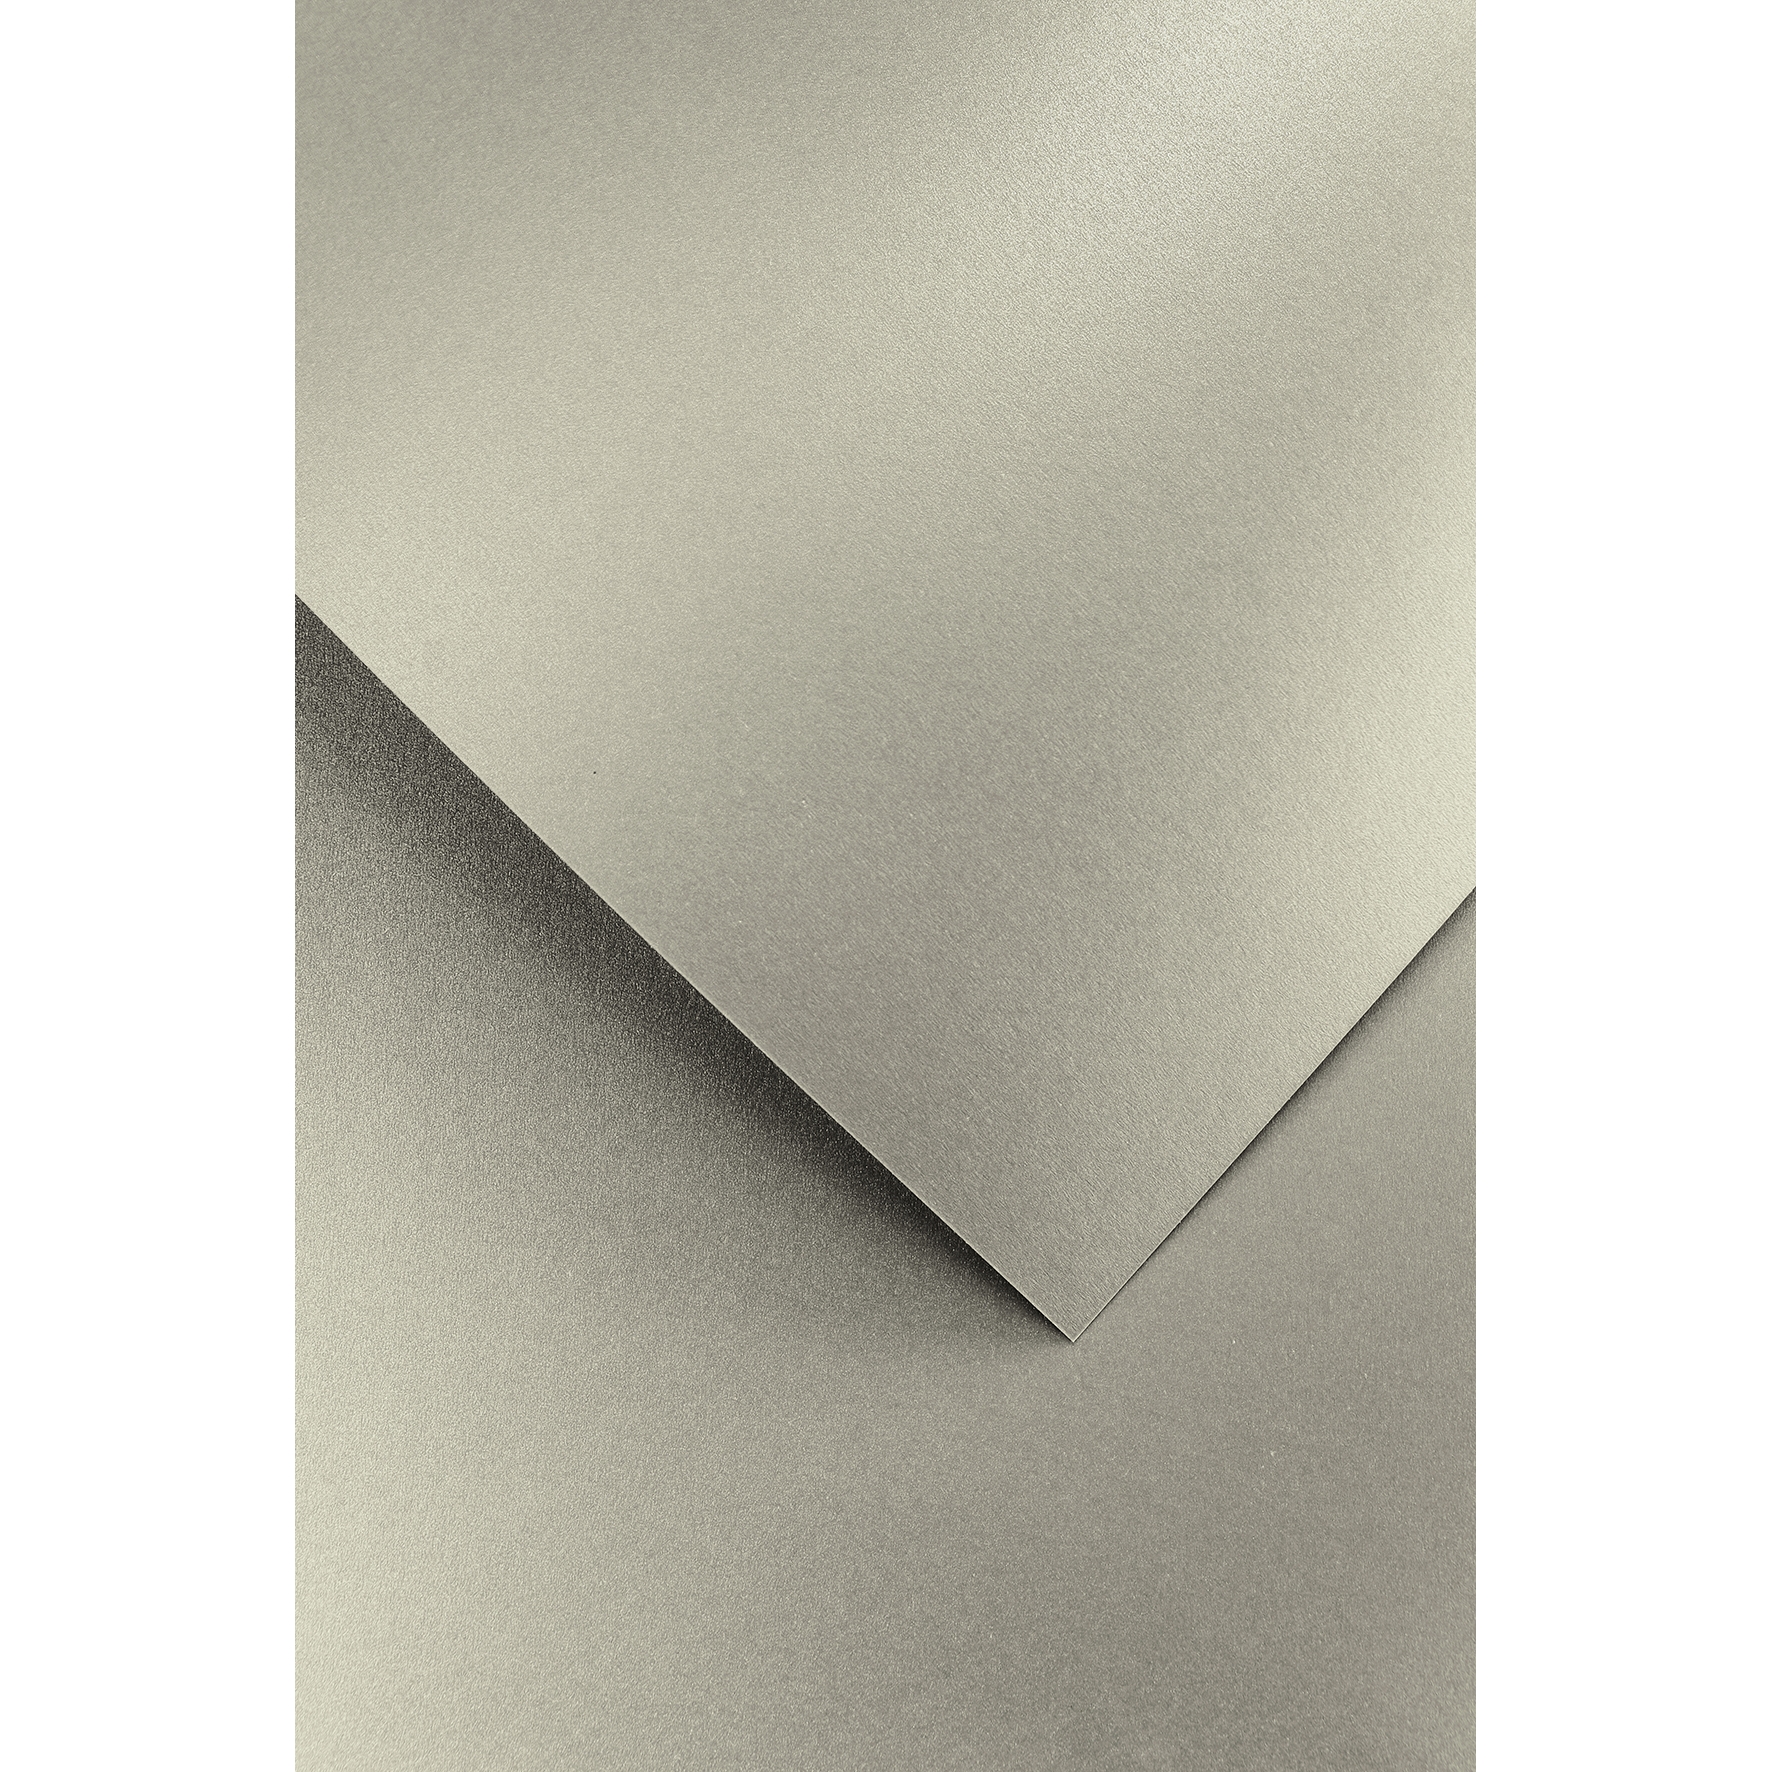 Ozdobný papír Pearl stříbrná 250g, 20ks